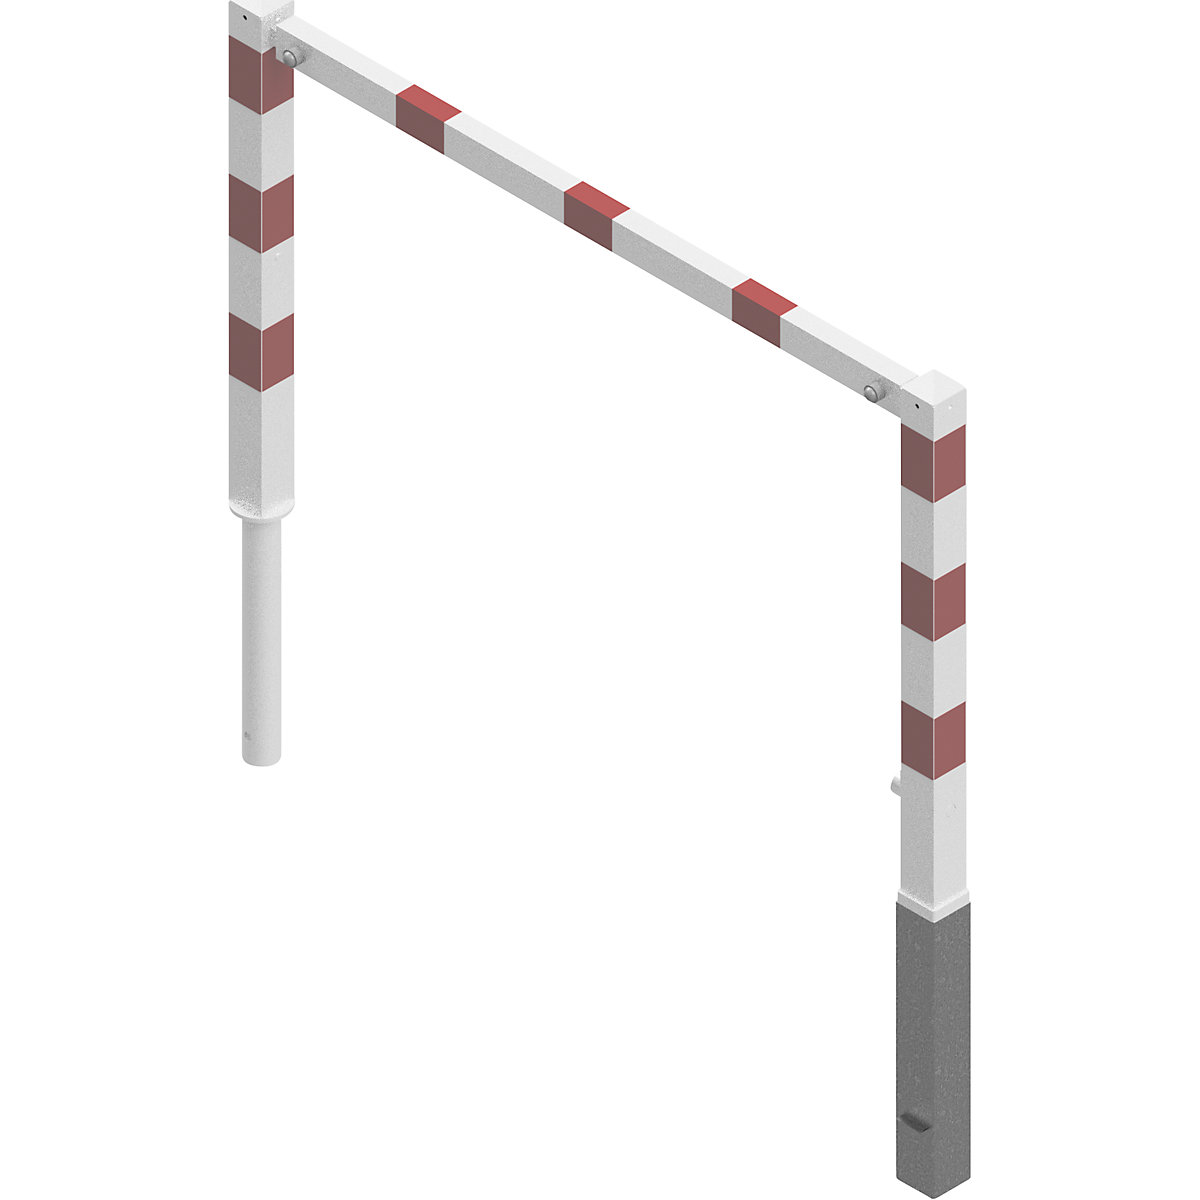 Barrière pivotante, avec barre supérieure, blanc avec bandes réfléchissantes rouges, largeur 1500 mm-2